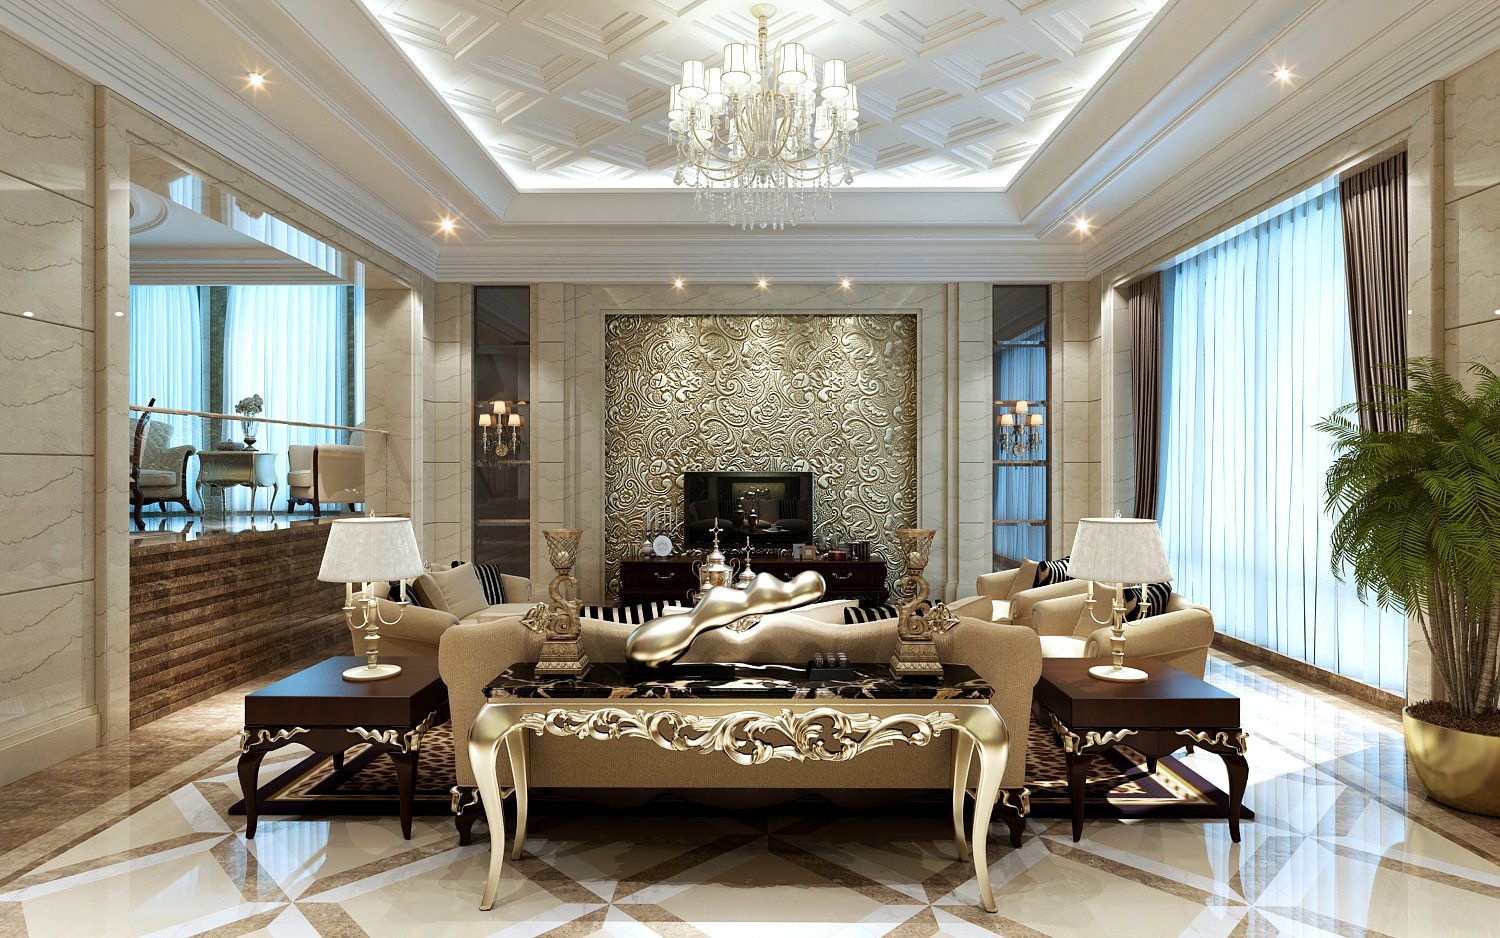 Luxury тг. Интерьер в стиле лакшери Модерн. Стиль лакшери в интерьере. Роскошный интерьер гостиной. Шикарный потолок в гостиной.